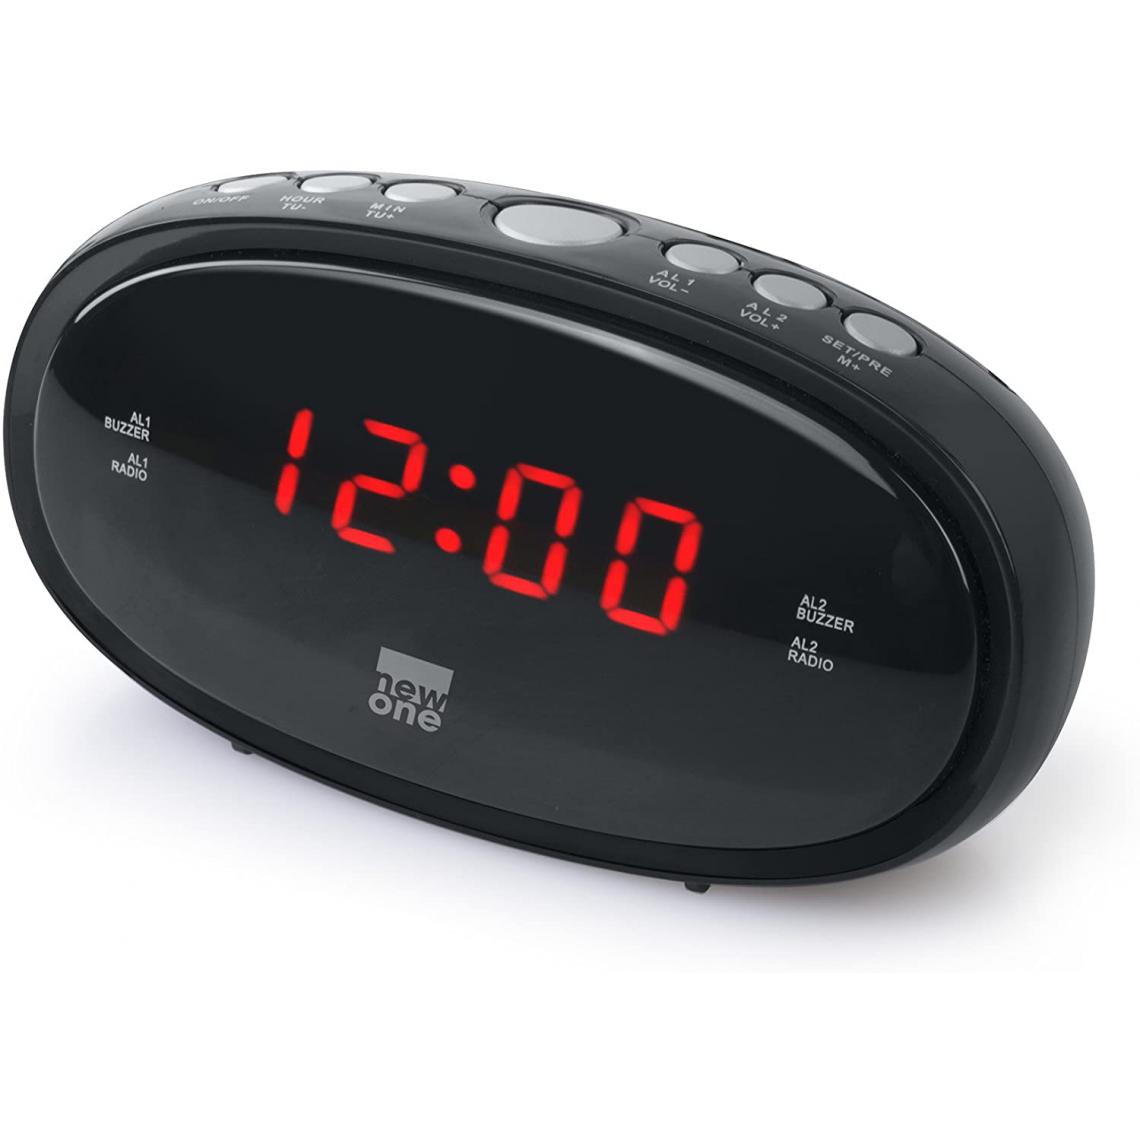 New One - radio réveil FM fonction répétition d'alarme gris noir - Radio